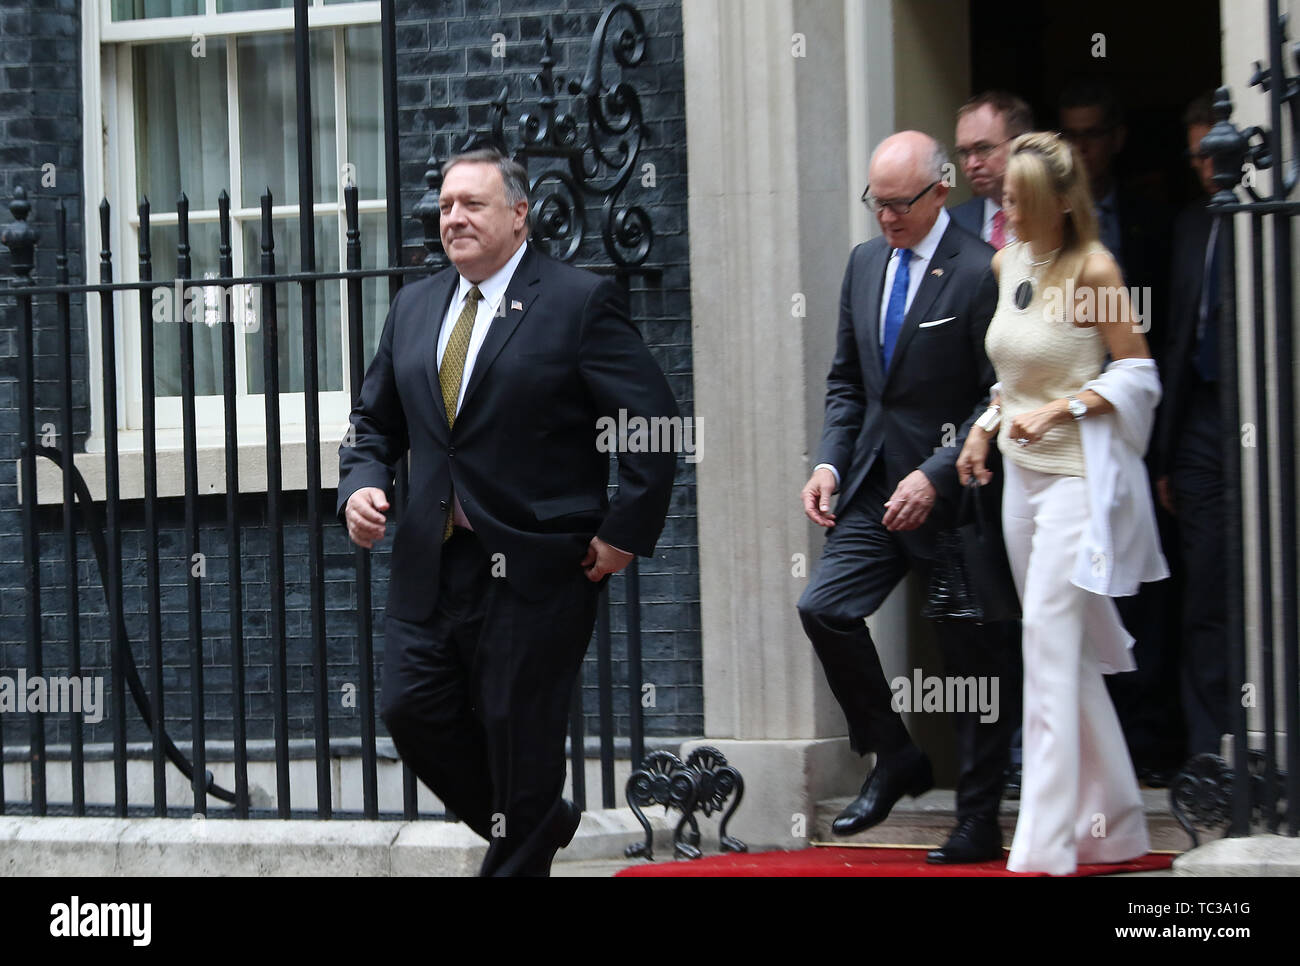 Mike Pompeo, Stati Uniti d'America visita presidenziale per il Regno Unito, Downing Street, Londra, Regno Unito, 04 giugno 2019, Foto di Richard Goldschmidt Foto Stock